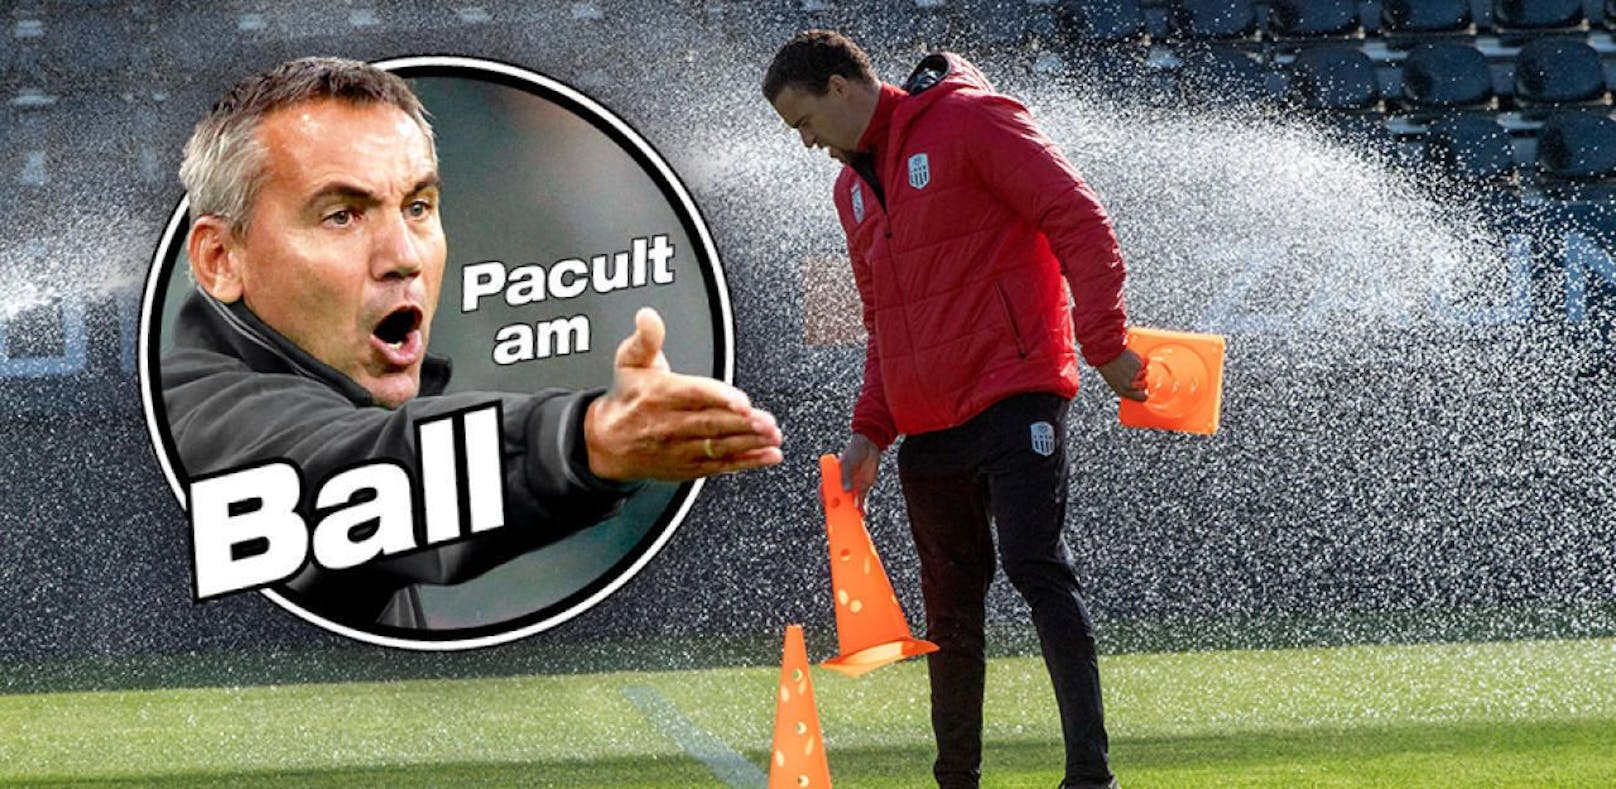 Peter Pacult zur aktuellen Lage in der Bundesliga